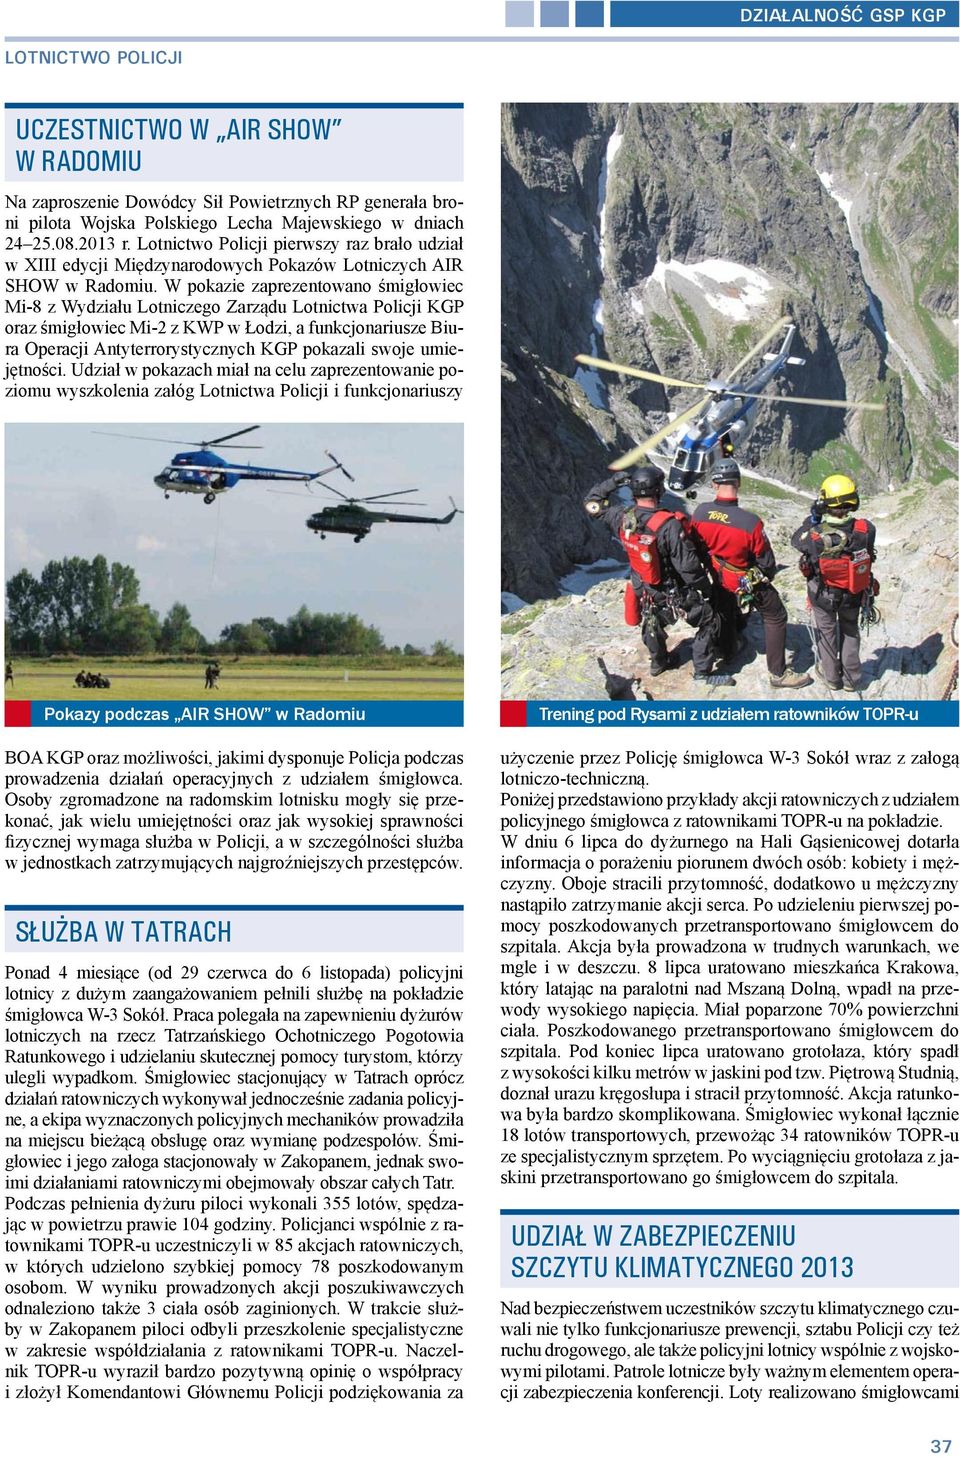 W pokazie zaprezentowano śmigłowiec Mi-8 z Wydziału Lotniczego Zarządu Lotnictwa Policji KGP oraz śmigłowiec Mi-2 z KWP w Łodzi, a funkcjonariusze Biura Operacji Antyterrorystycznych KGP pokazali